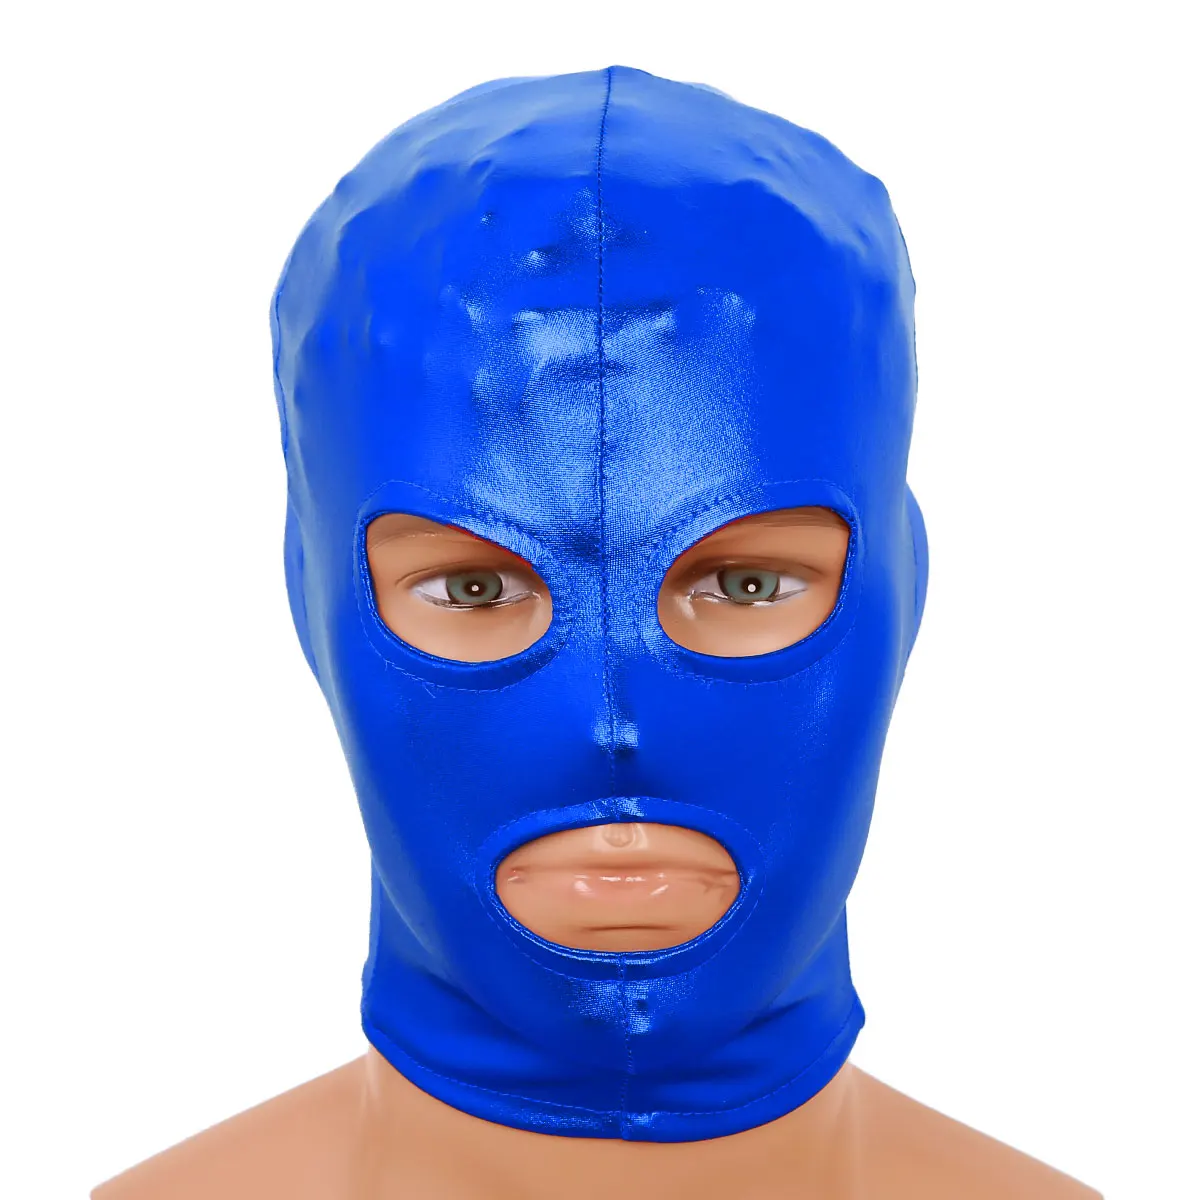 Мужская и женская латексная маска, сексуальный головной убор, Блестящий металлический головной убор с открытыми глазами и ртом, маска на все лицо, капюшон для ролевых игр, костюм для секса